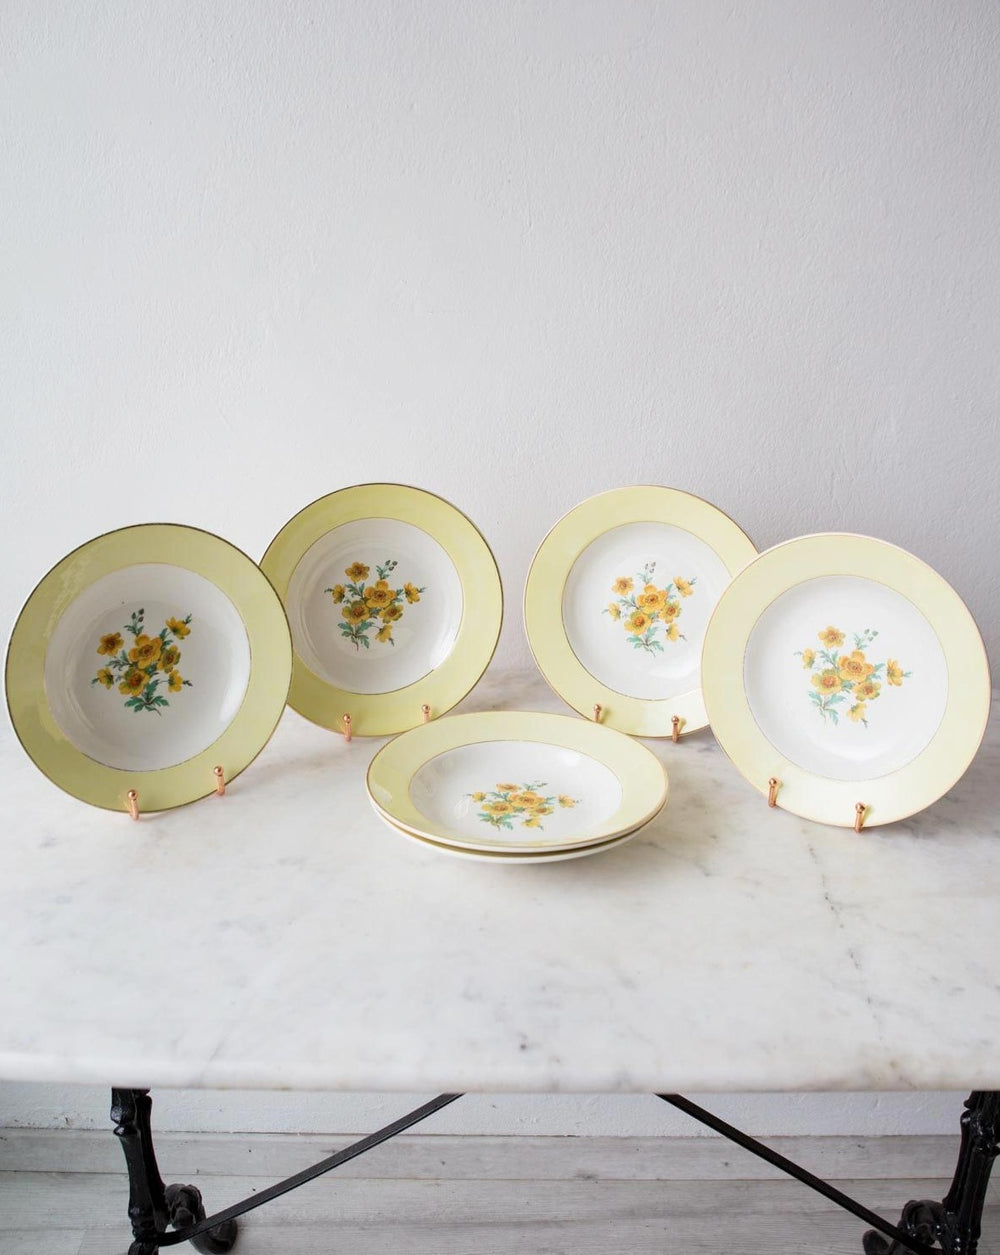 Platos hondos franceses amarillos loza Sarreguemines french yellow bowls